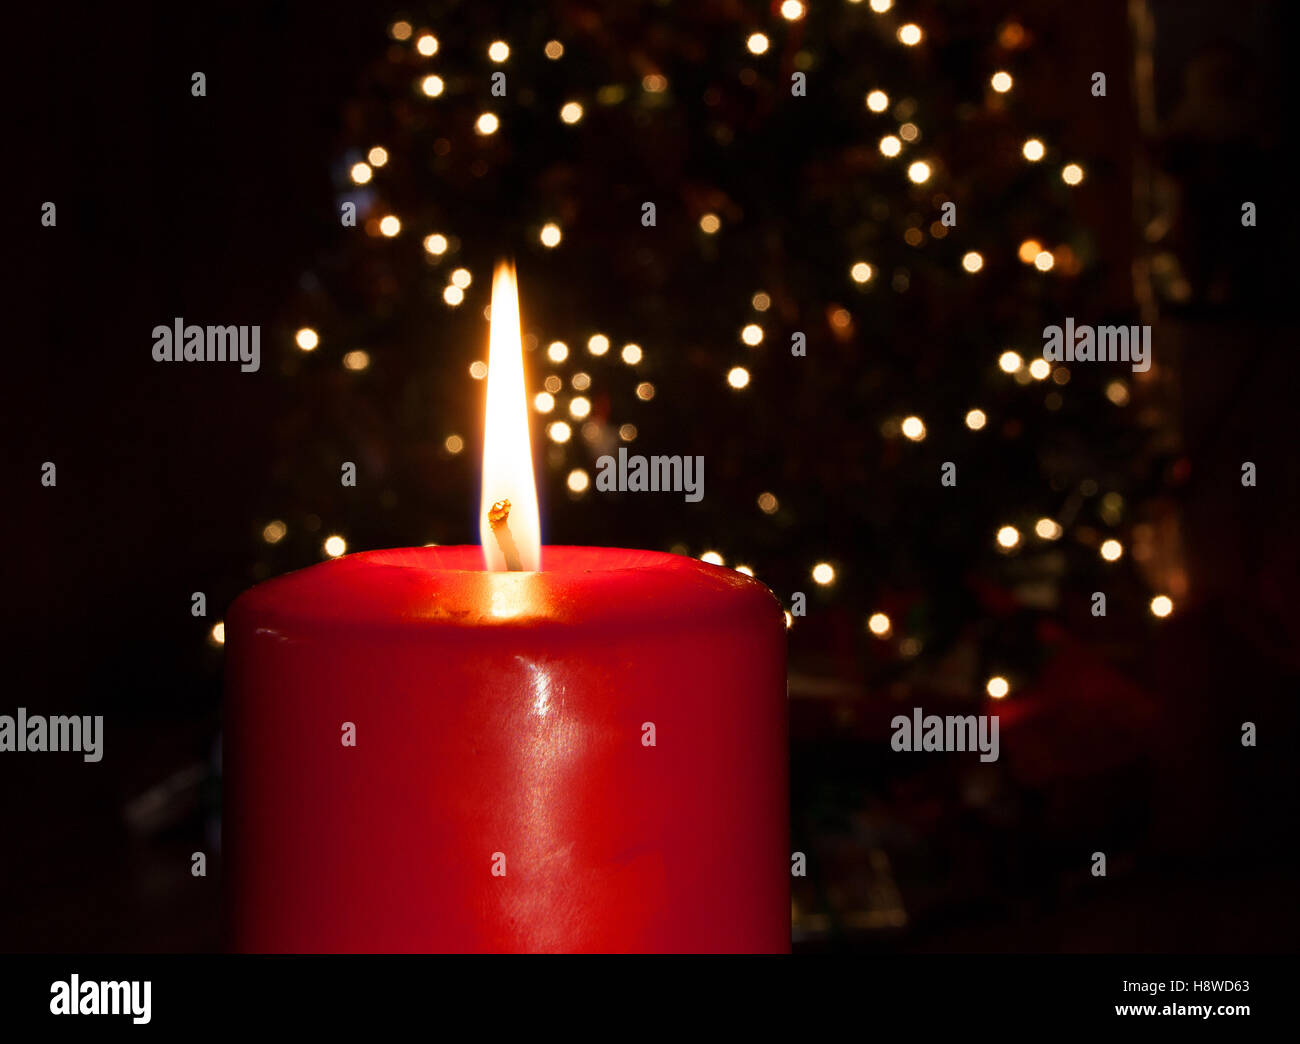 Velas de color rojo brillante en la parte delantera de un árbol de Navidad iluminado detrás Foto de stock